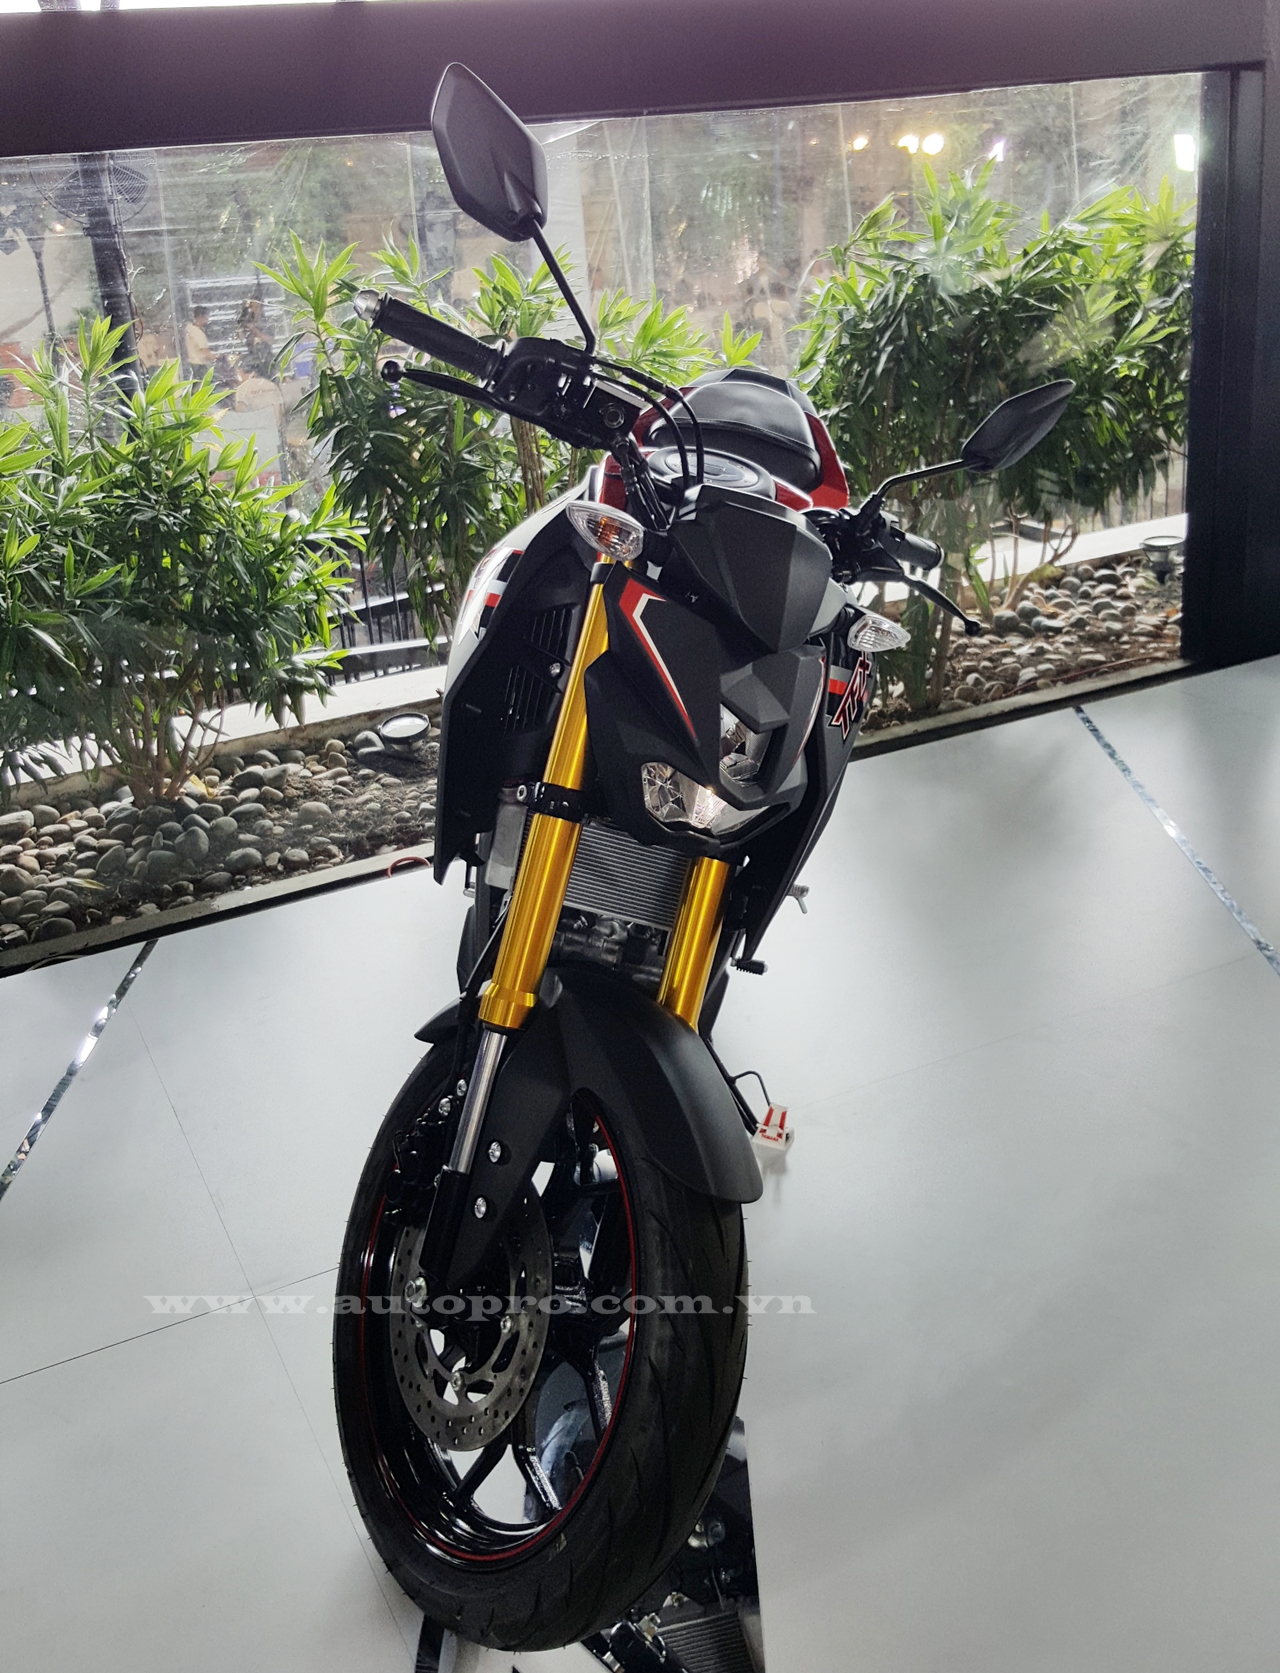 
Yamaha TFX150 được xem là phiên bản naked bike của dòng mô tô thể thao R15. Xe có kích thước tổng thể bao gồm chiều dài 1.955 mm, rộng 795 mm, cao 1.065 mm và chiều dài cơ sở 1.350 mm.
